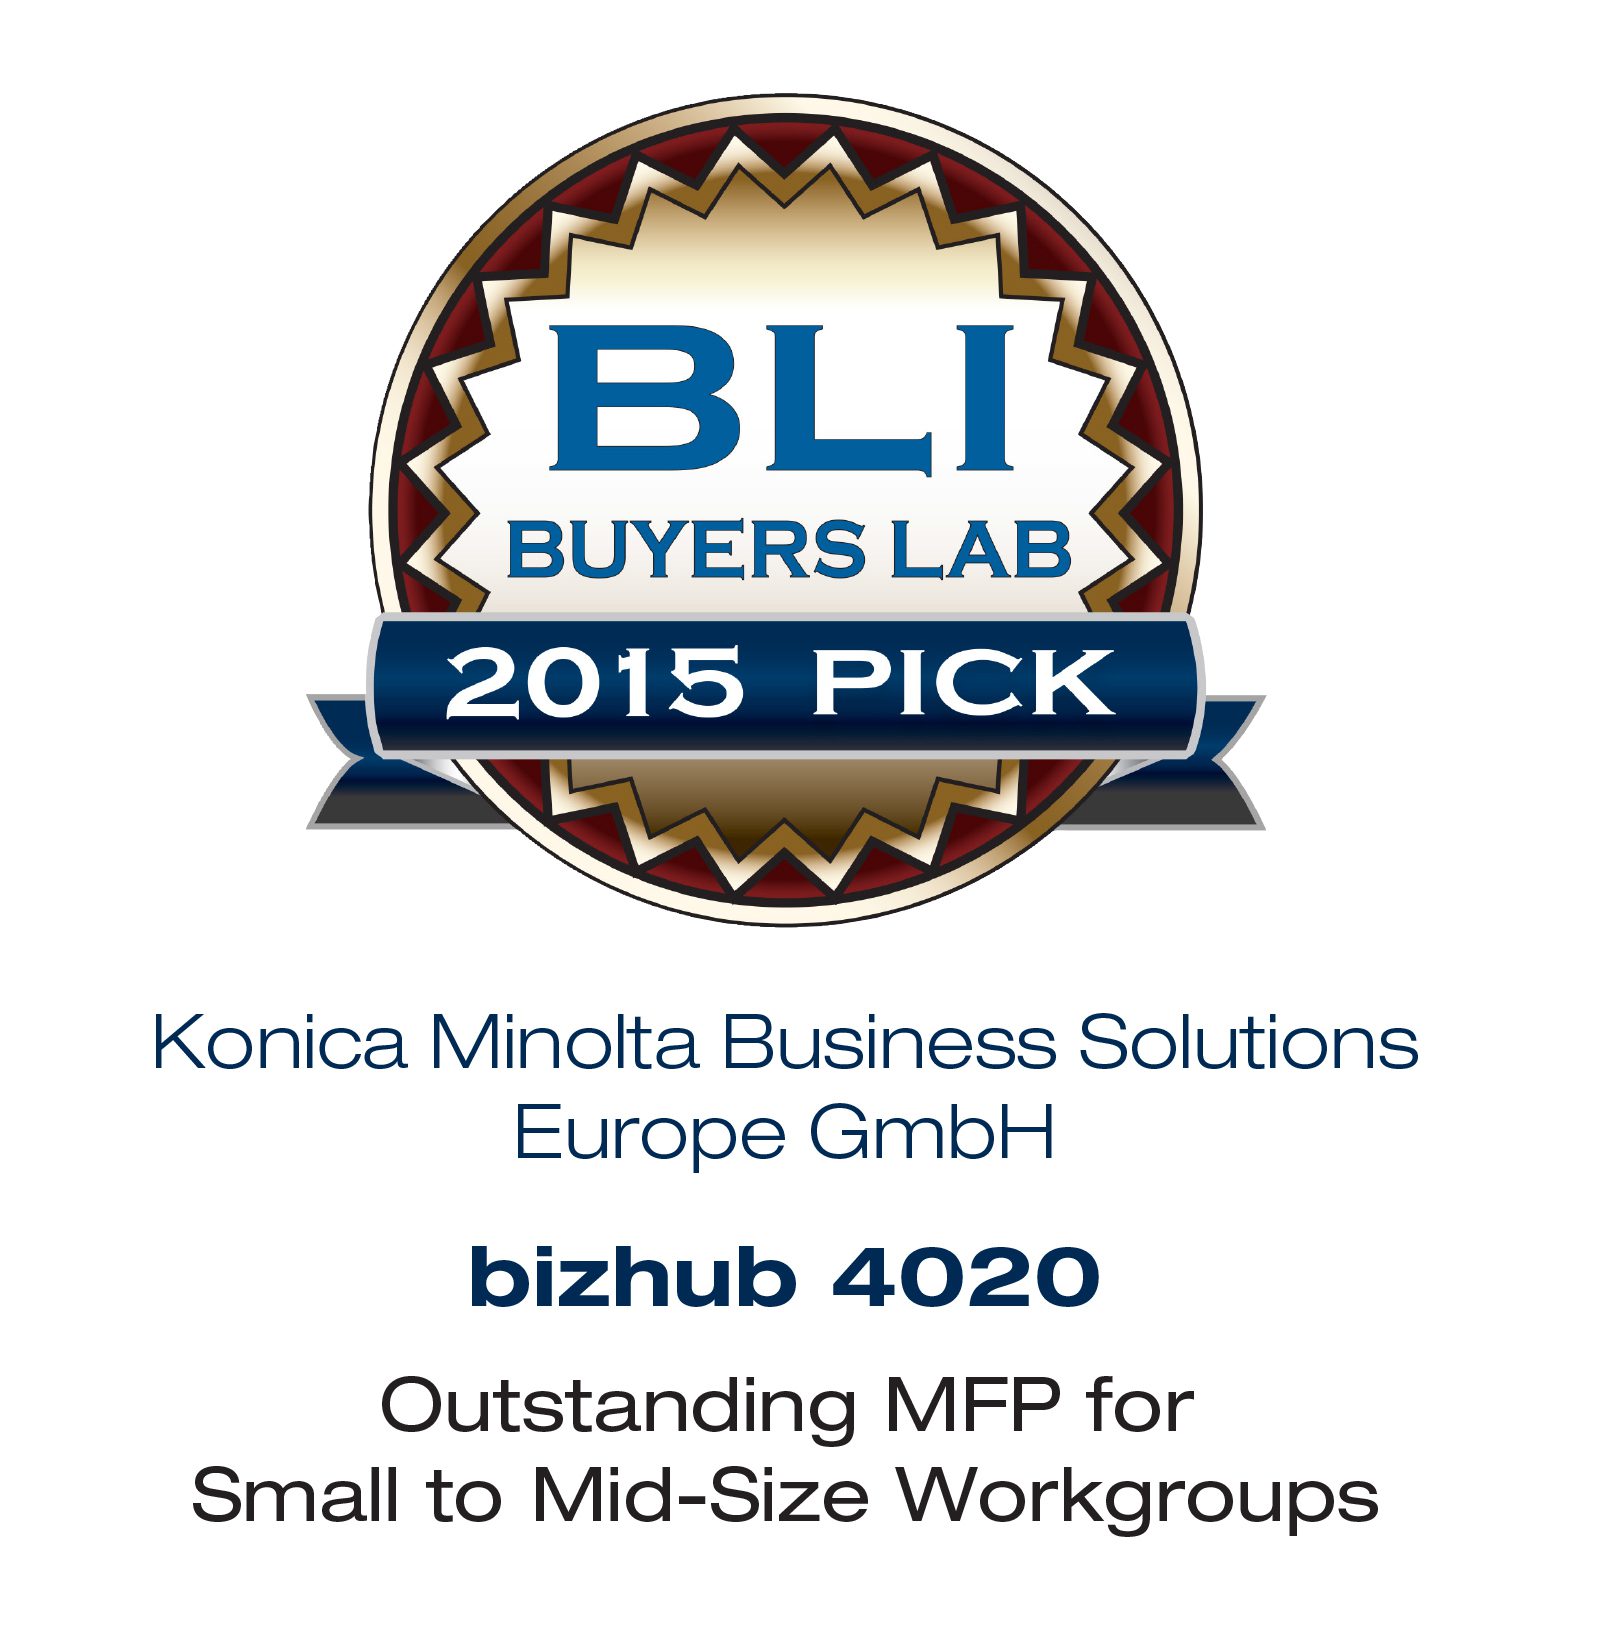 Konica Minolta bizhub 4020 wins BLI Summer Pick Award 2015